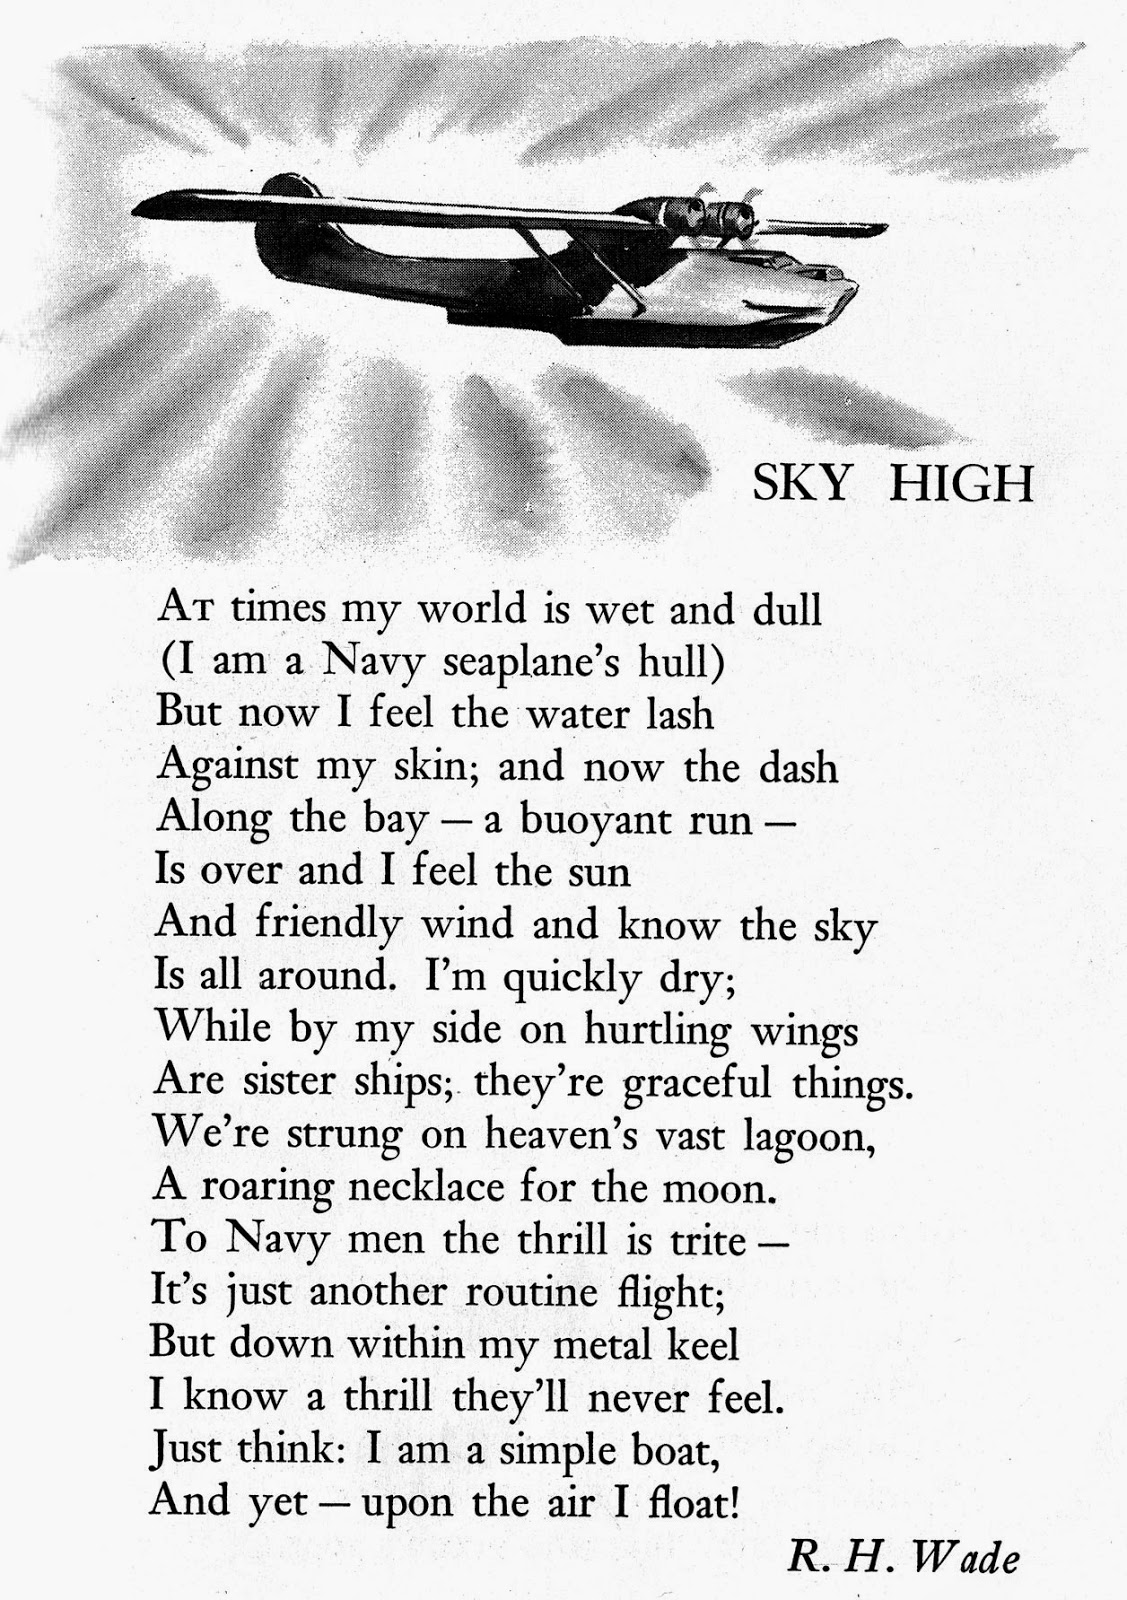 R.H. Wade poet